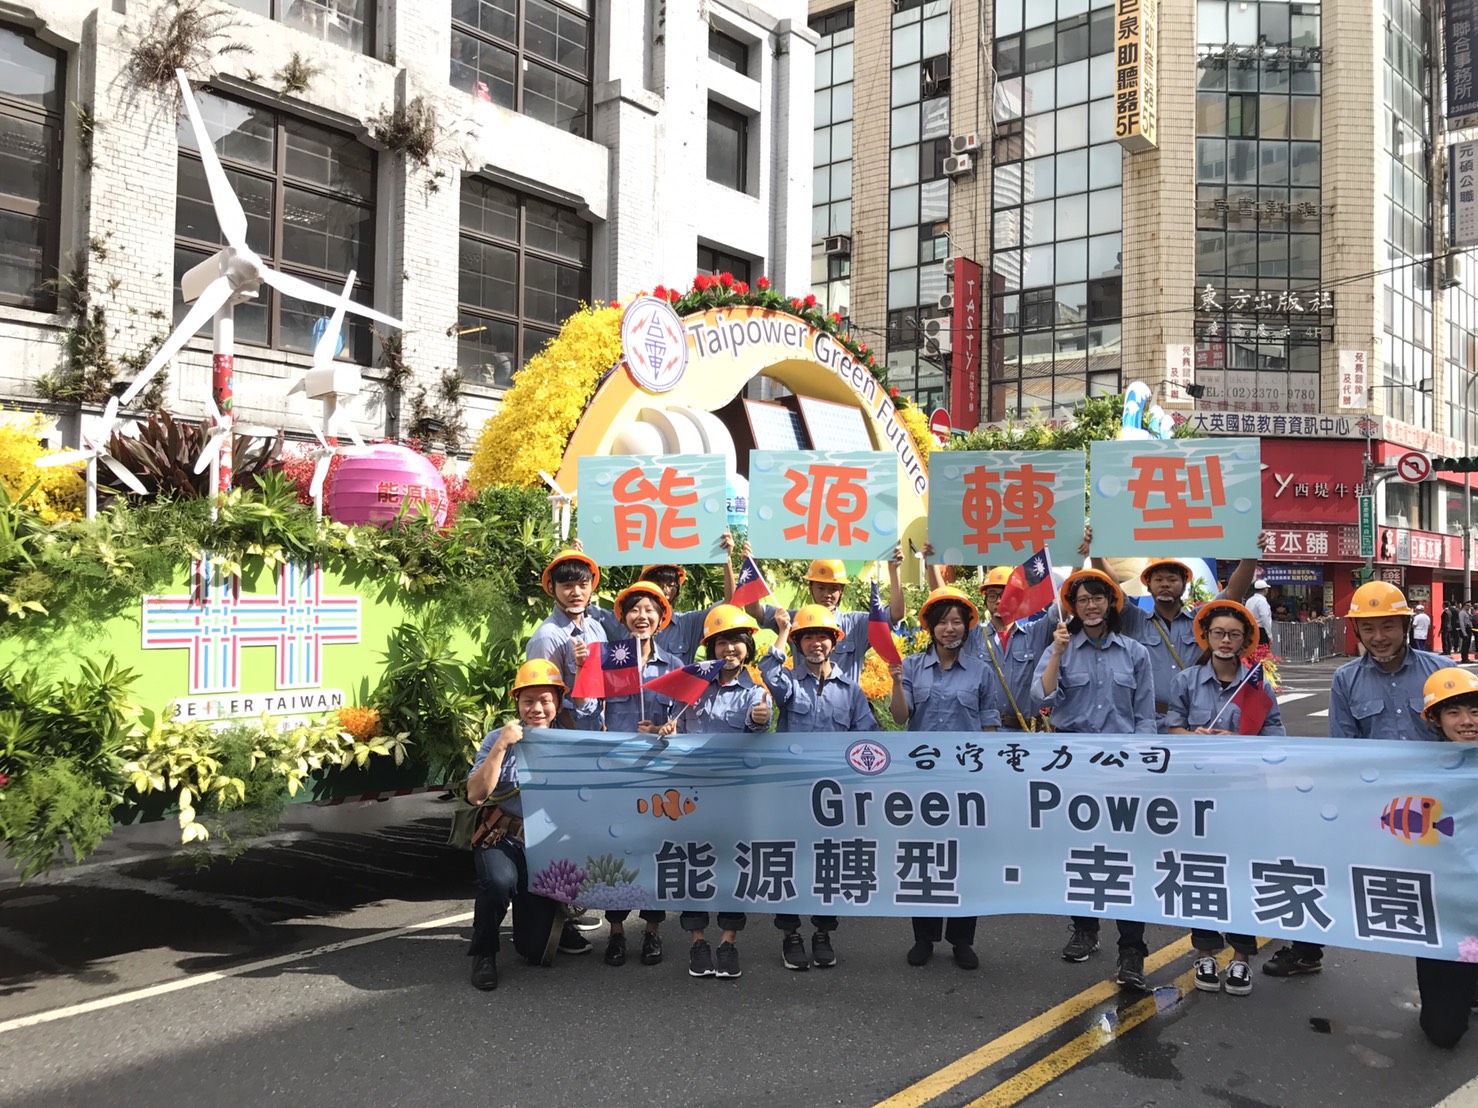 台電「能源轉型」造型花車超吸睛 慶賀中華民國106歲生日快樂 | 文章內置圖片